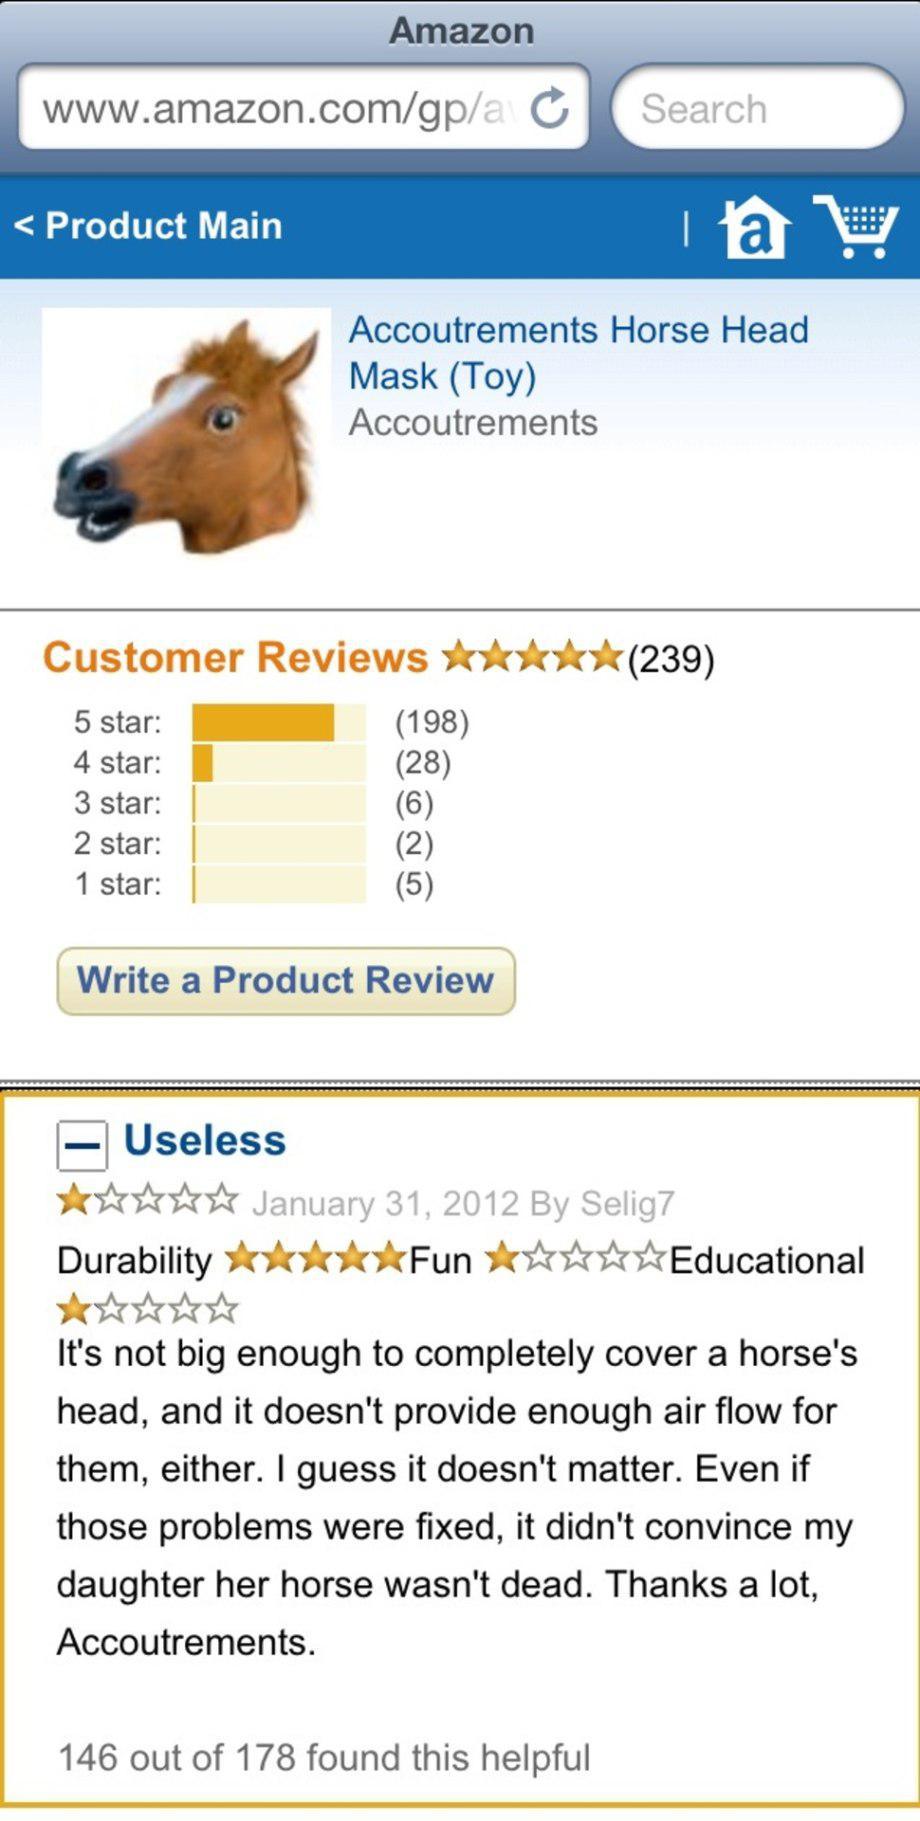 amazon reviews - web page - Amazon C Search